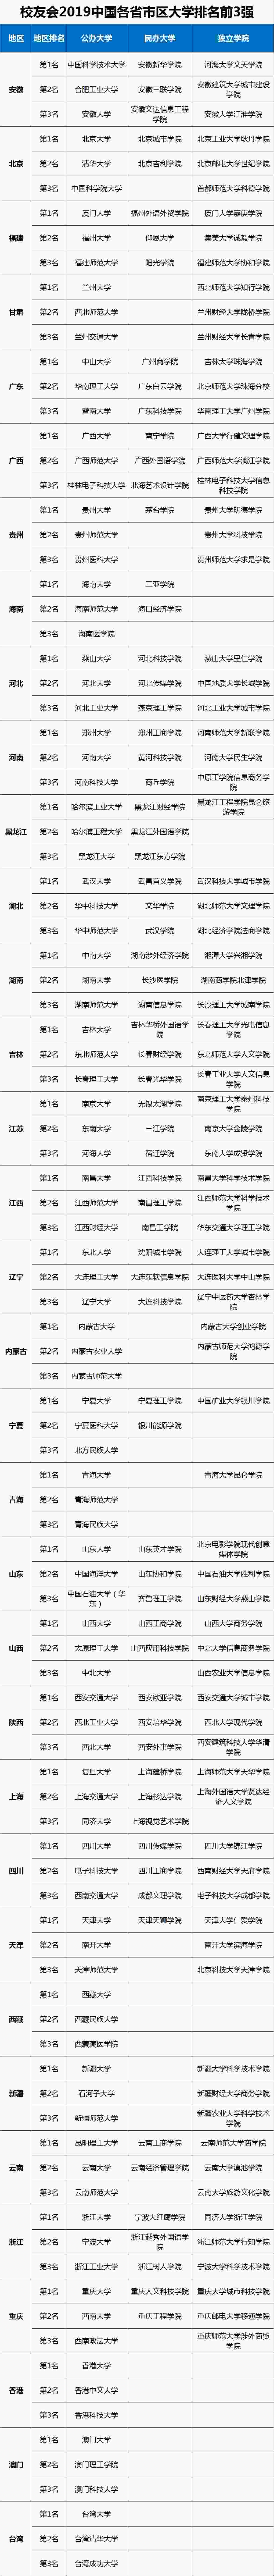 2019增高药排行榜_2019安卓应用市场排行榜Top10